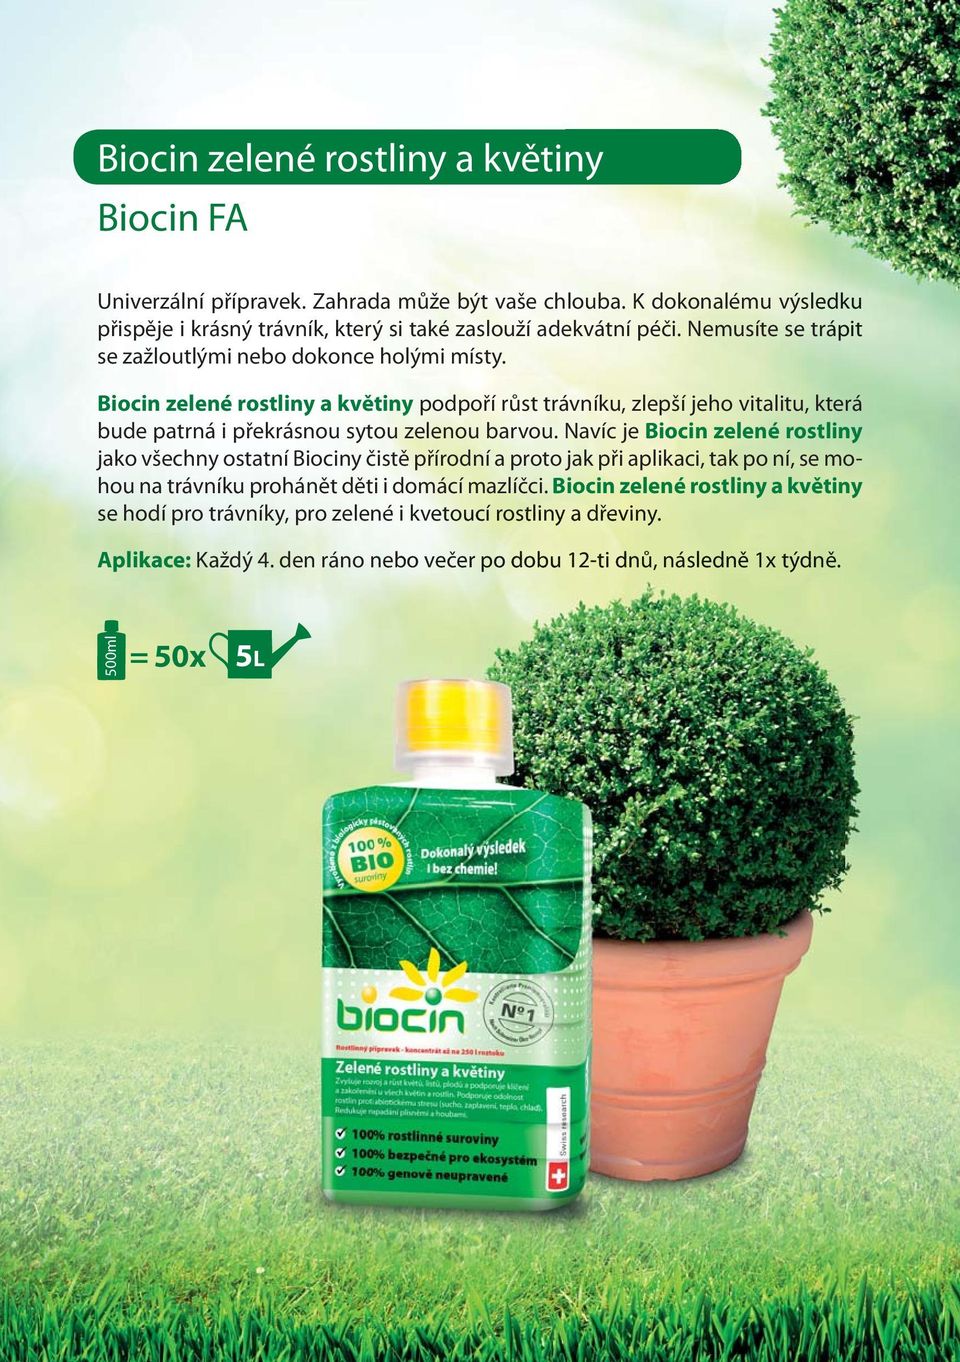 Biocin zelené rostliny a květiny podpoří růst trávníku, zlepší jeho vitalitu, která bude patrná i překrásnou sytou zelenou barvou.